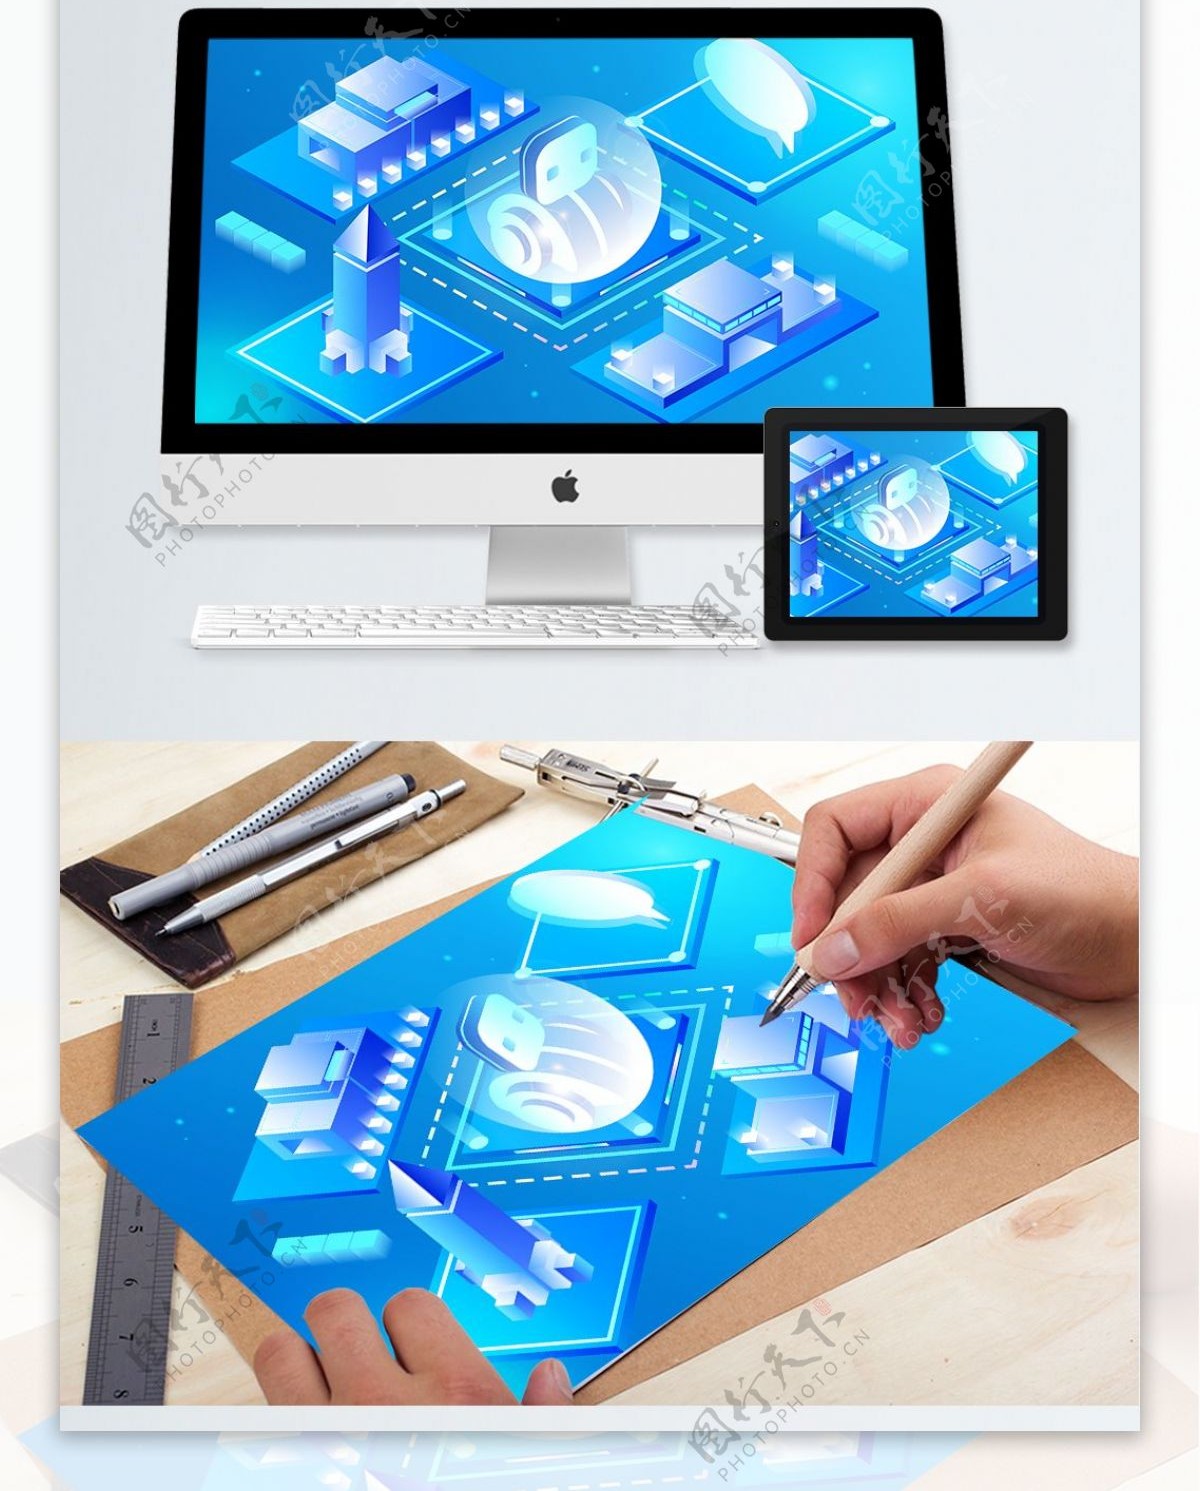 2.5D蓝色透气人工智能科技未来矢量插画